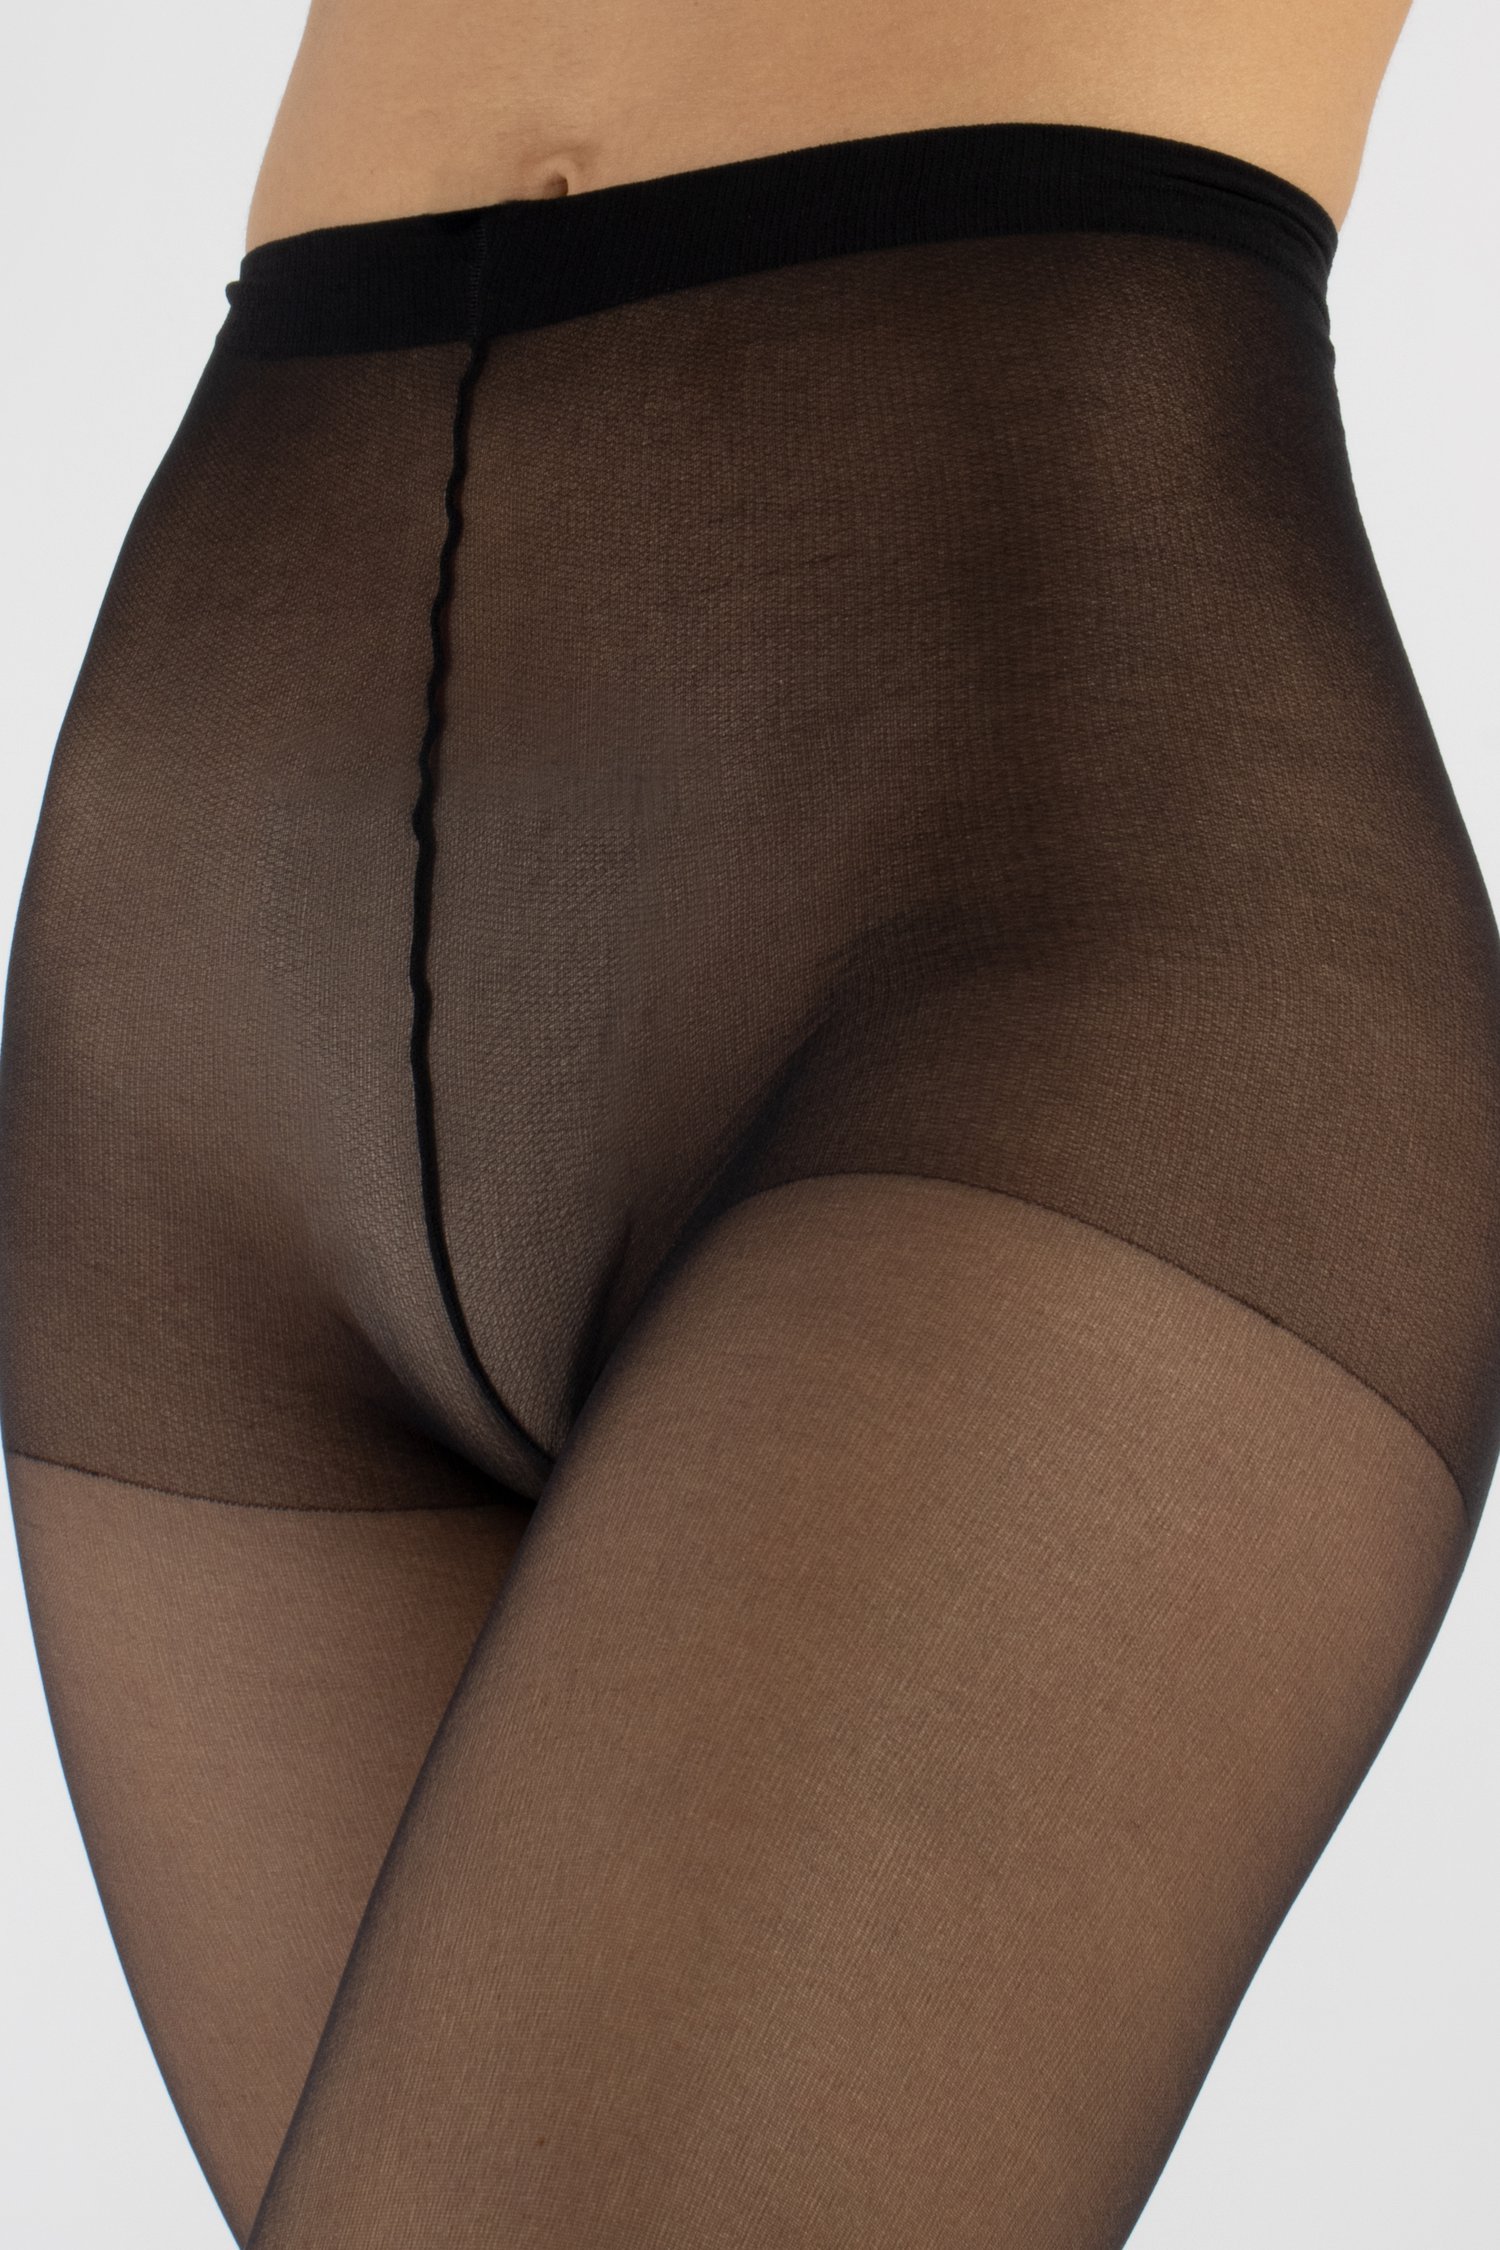 Nylon panty zwart - 20 den, 2 paar van Cette voor Dames